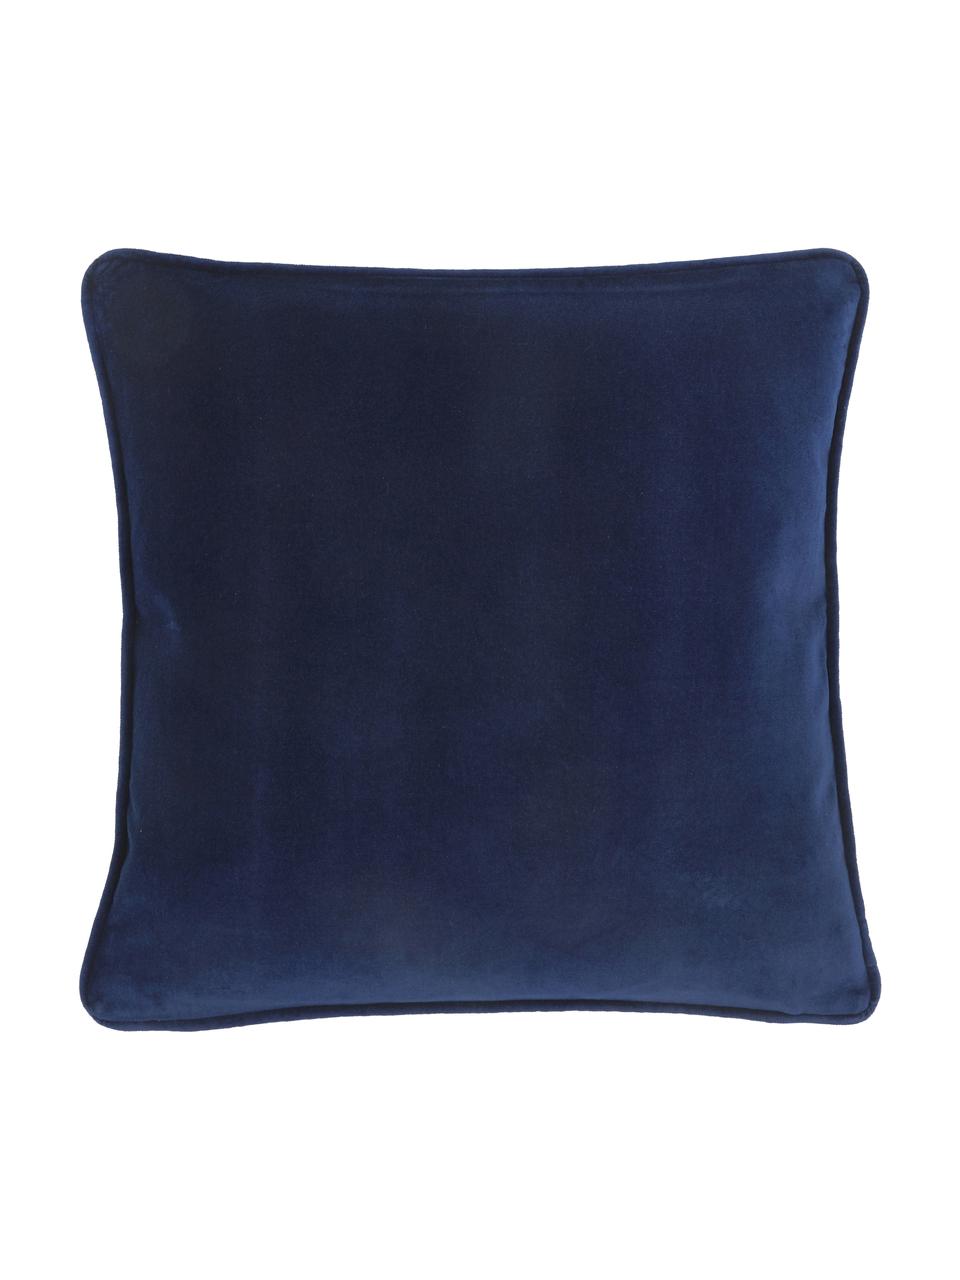 Federa arredo in velluto blu navy Dana, 100% velluto di cotone, Blu navy, Larg. 50 x Lung. 50 cm